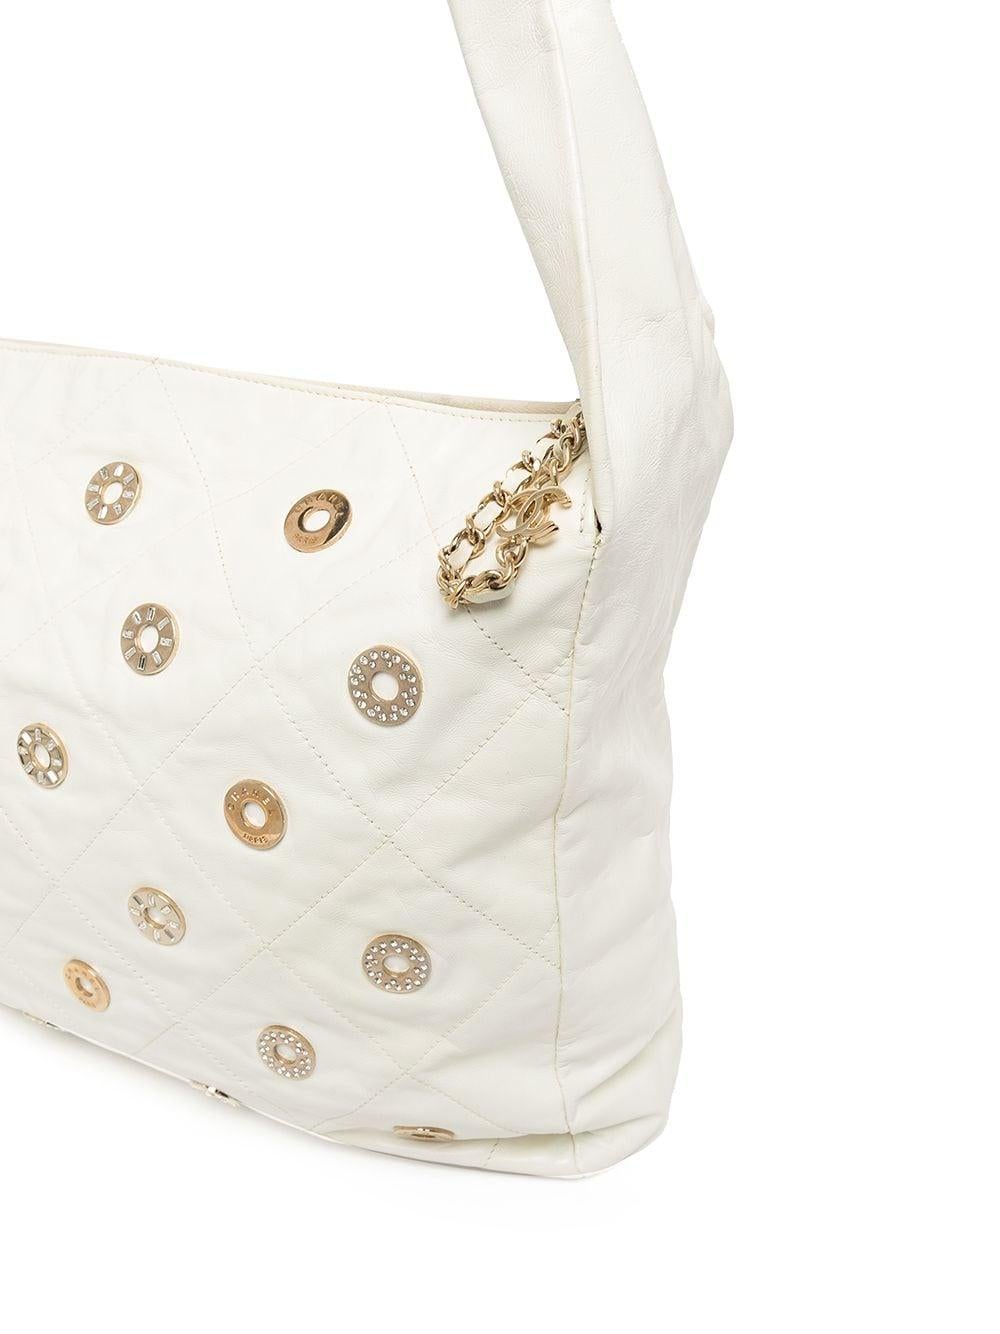 Chanel Rare Vintage 22 White Quilted Swarovski CharmShoulder Hobo Tote Bag For Sale 3